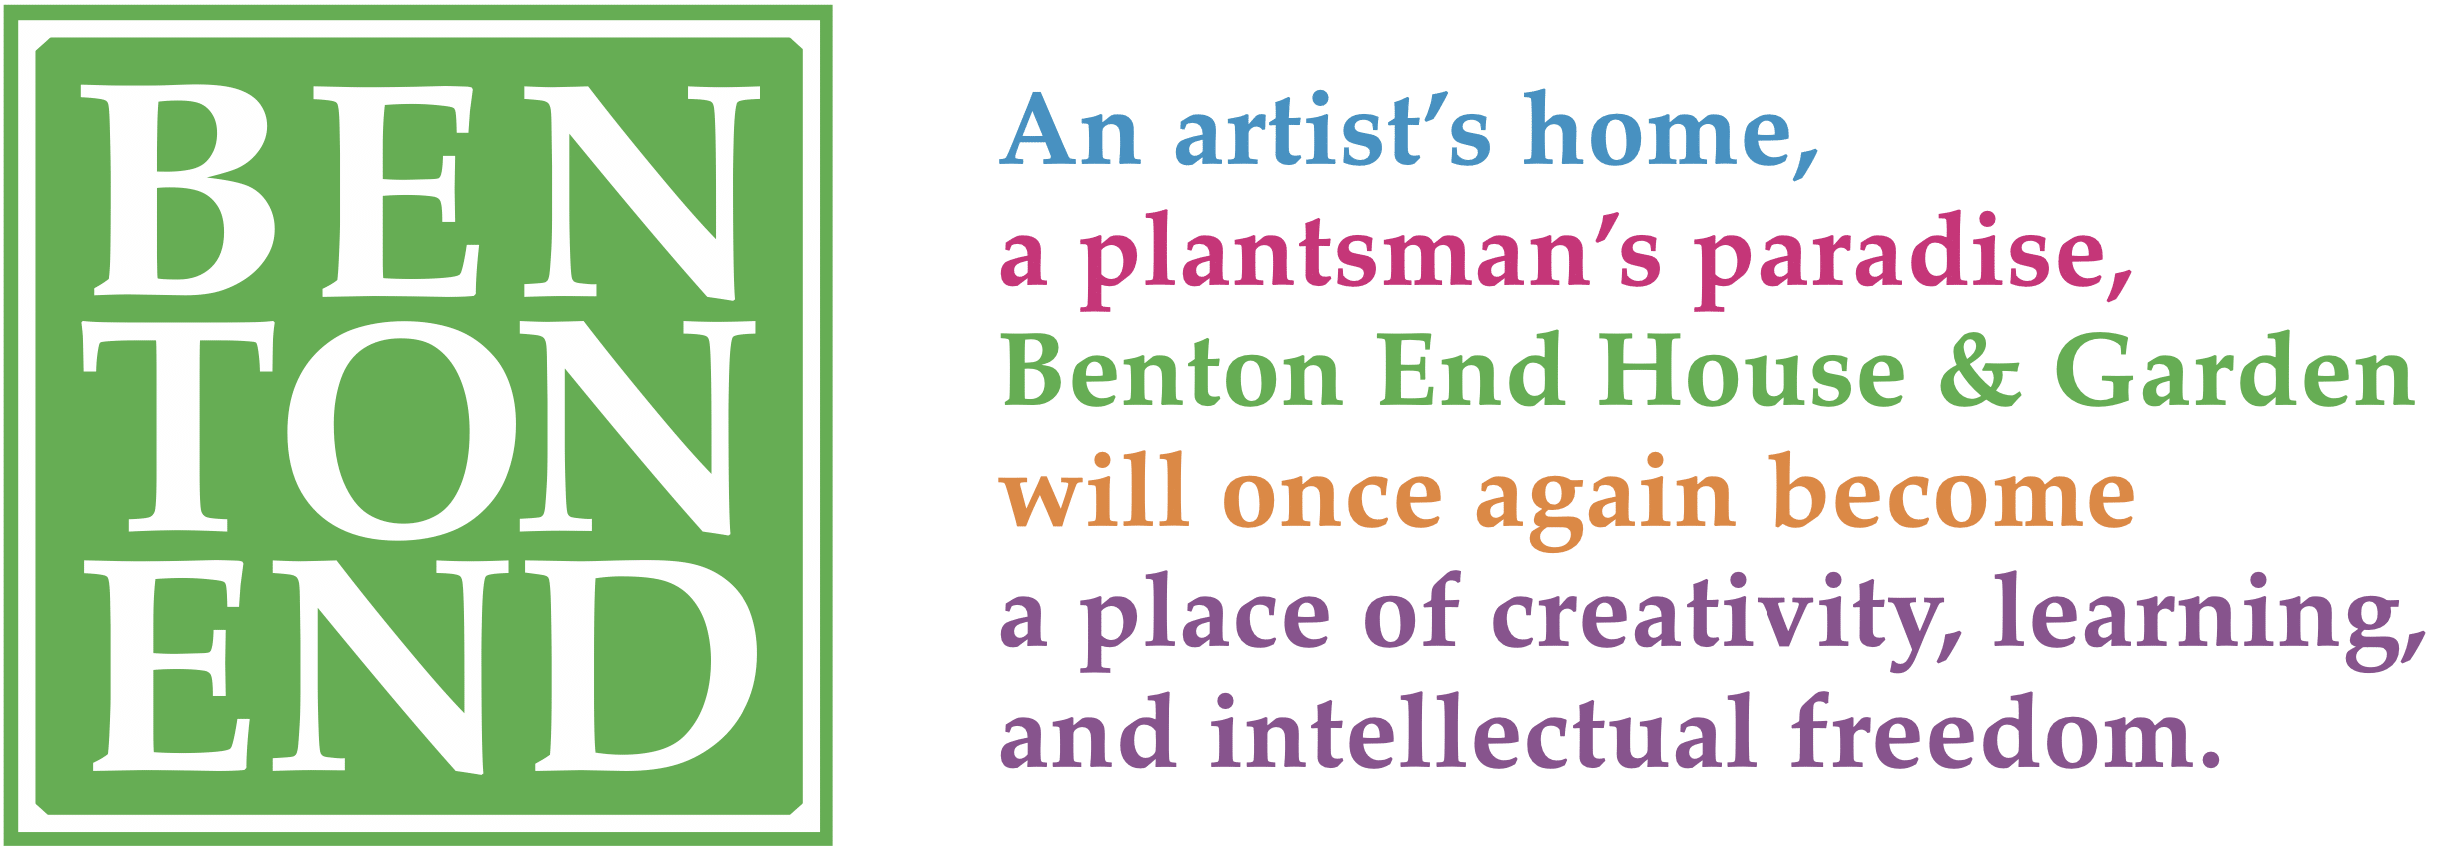 Benton End House & Garden Trust